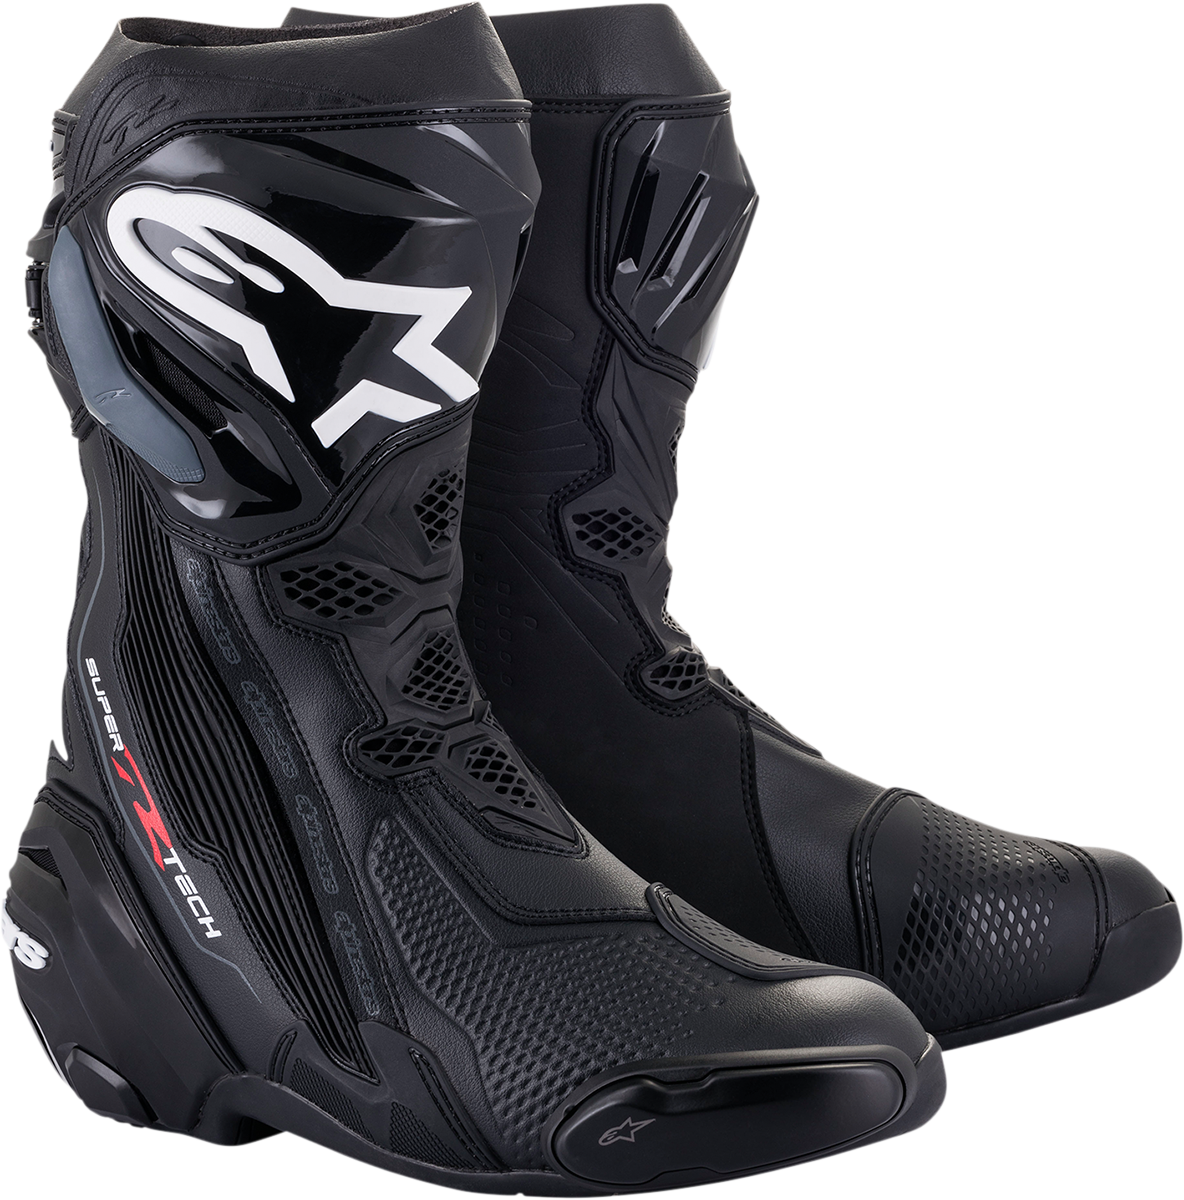 ALPINESTARS Supertech R Boots - Black - US 12 / EU 47 2220021-10-47